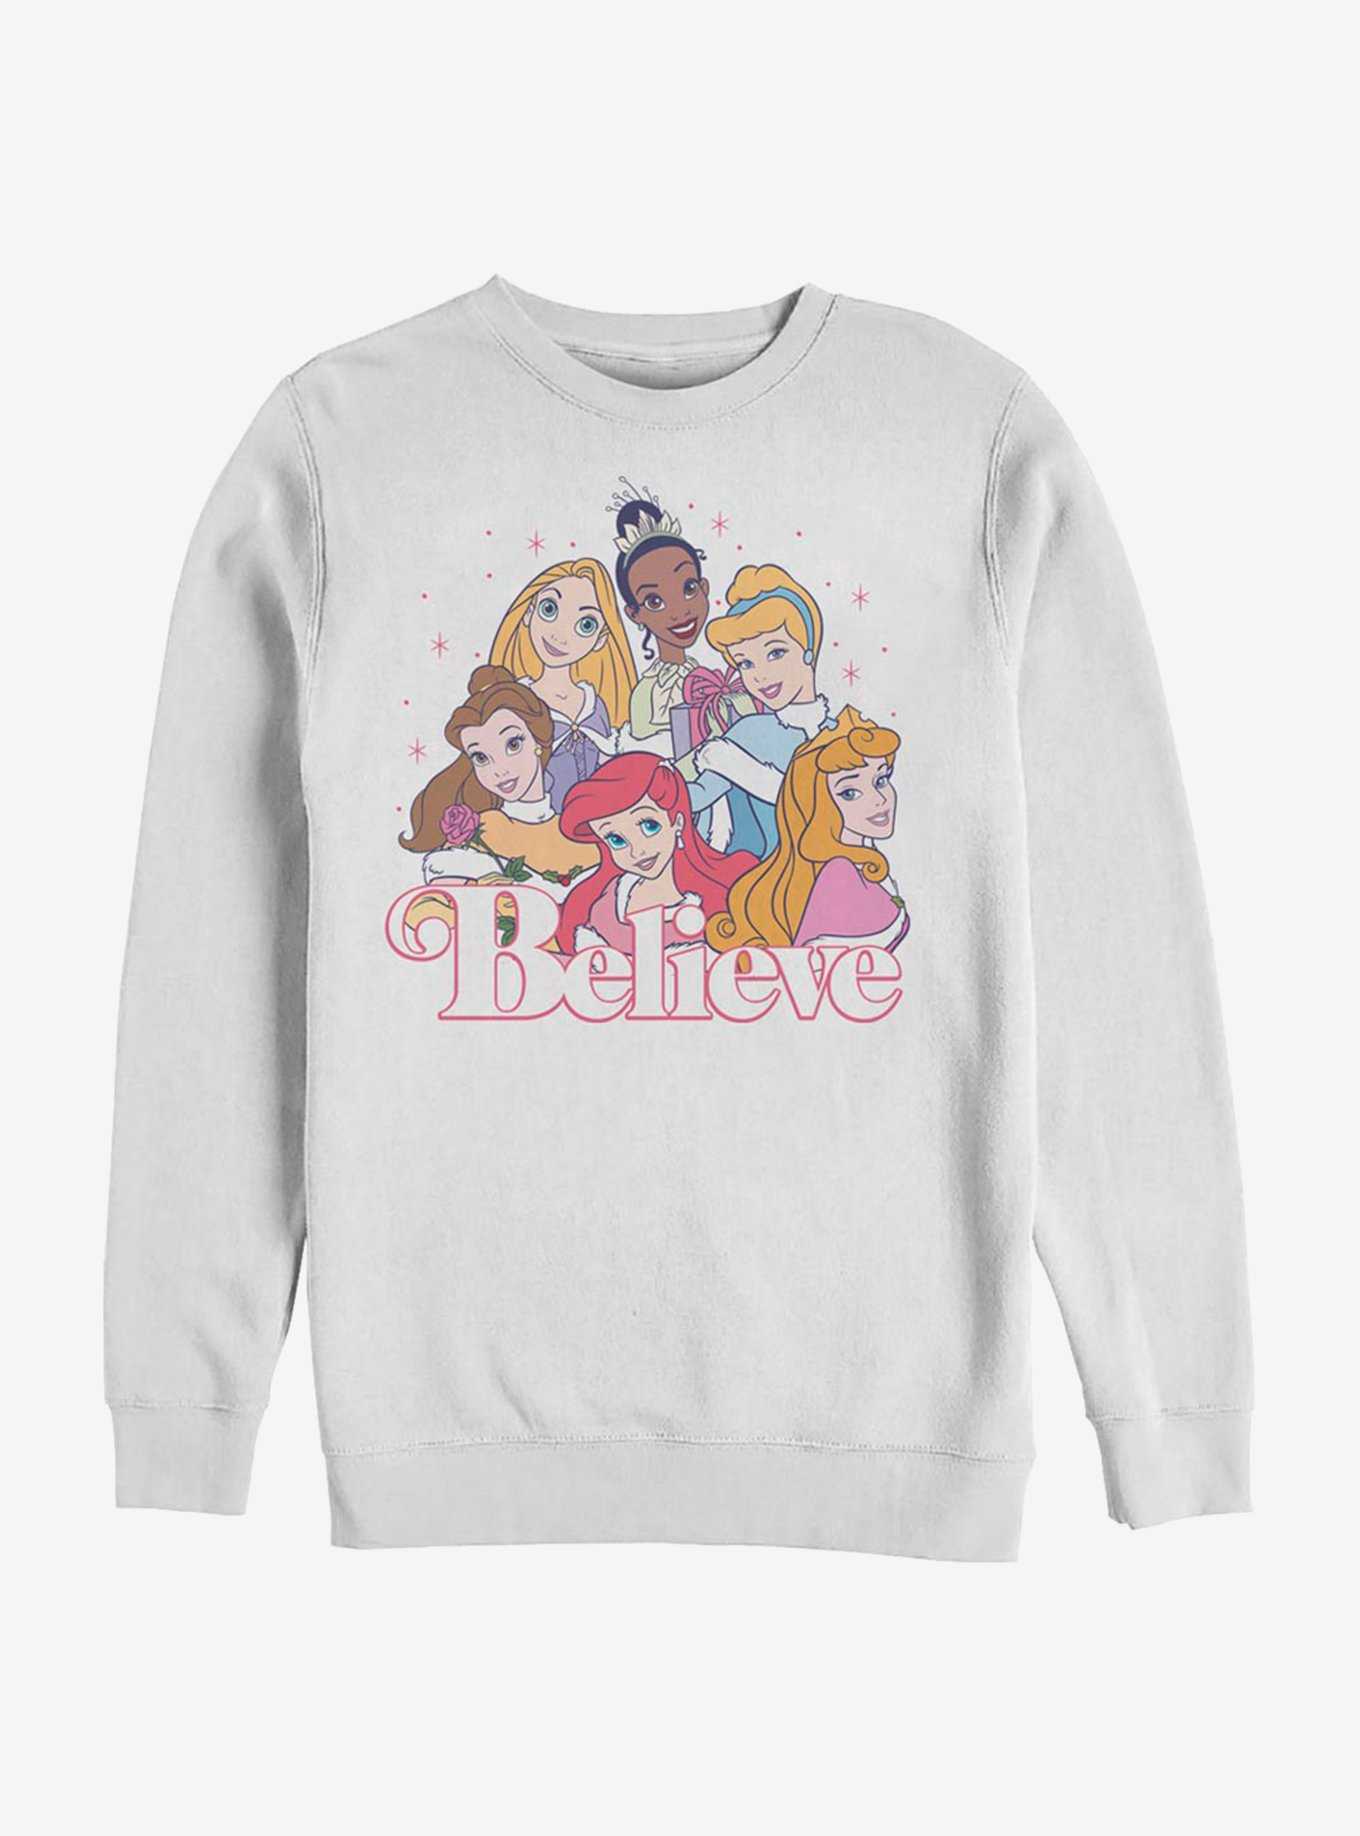 Disney Princess Believe Crew Sweatshirt, , hi-res